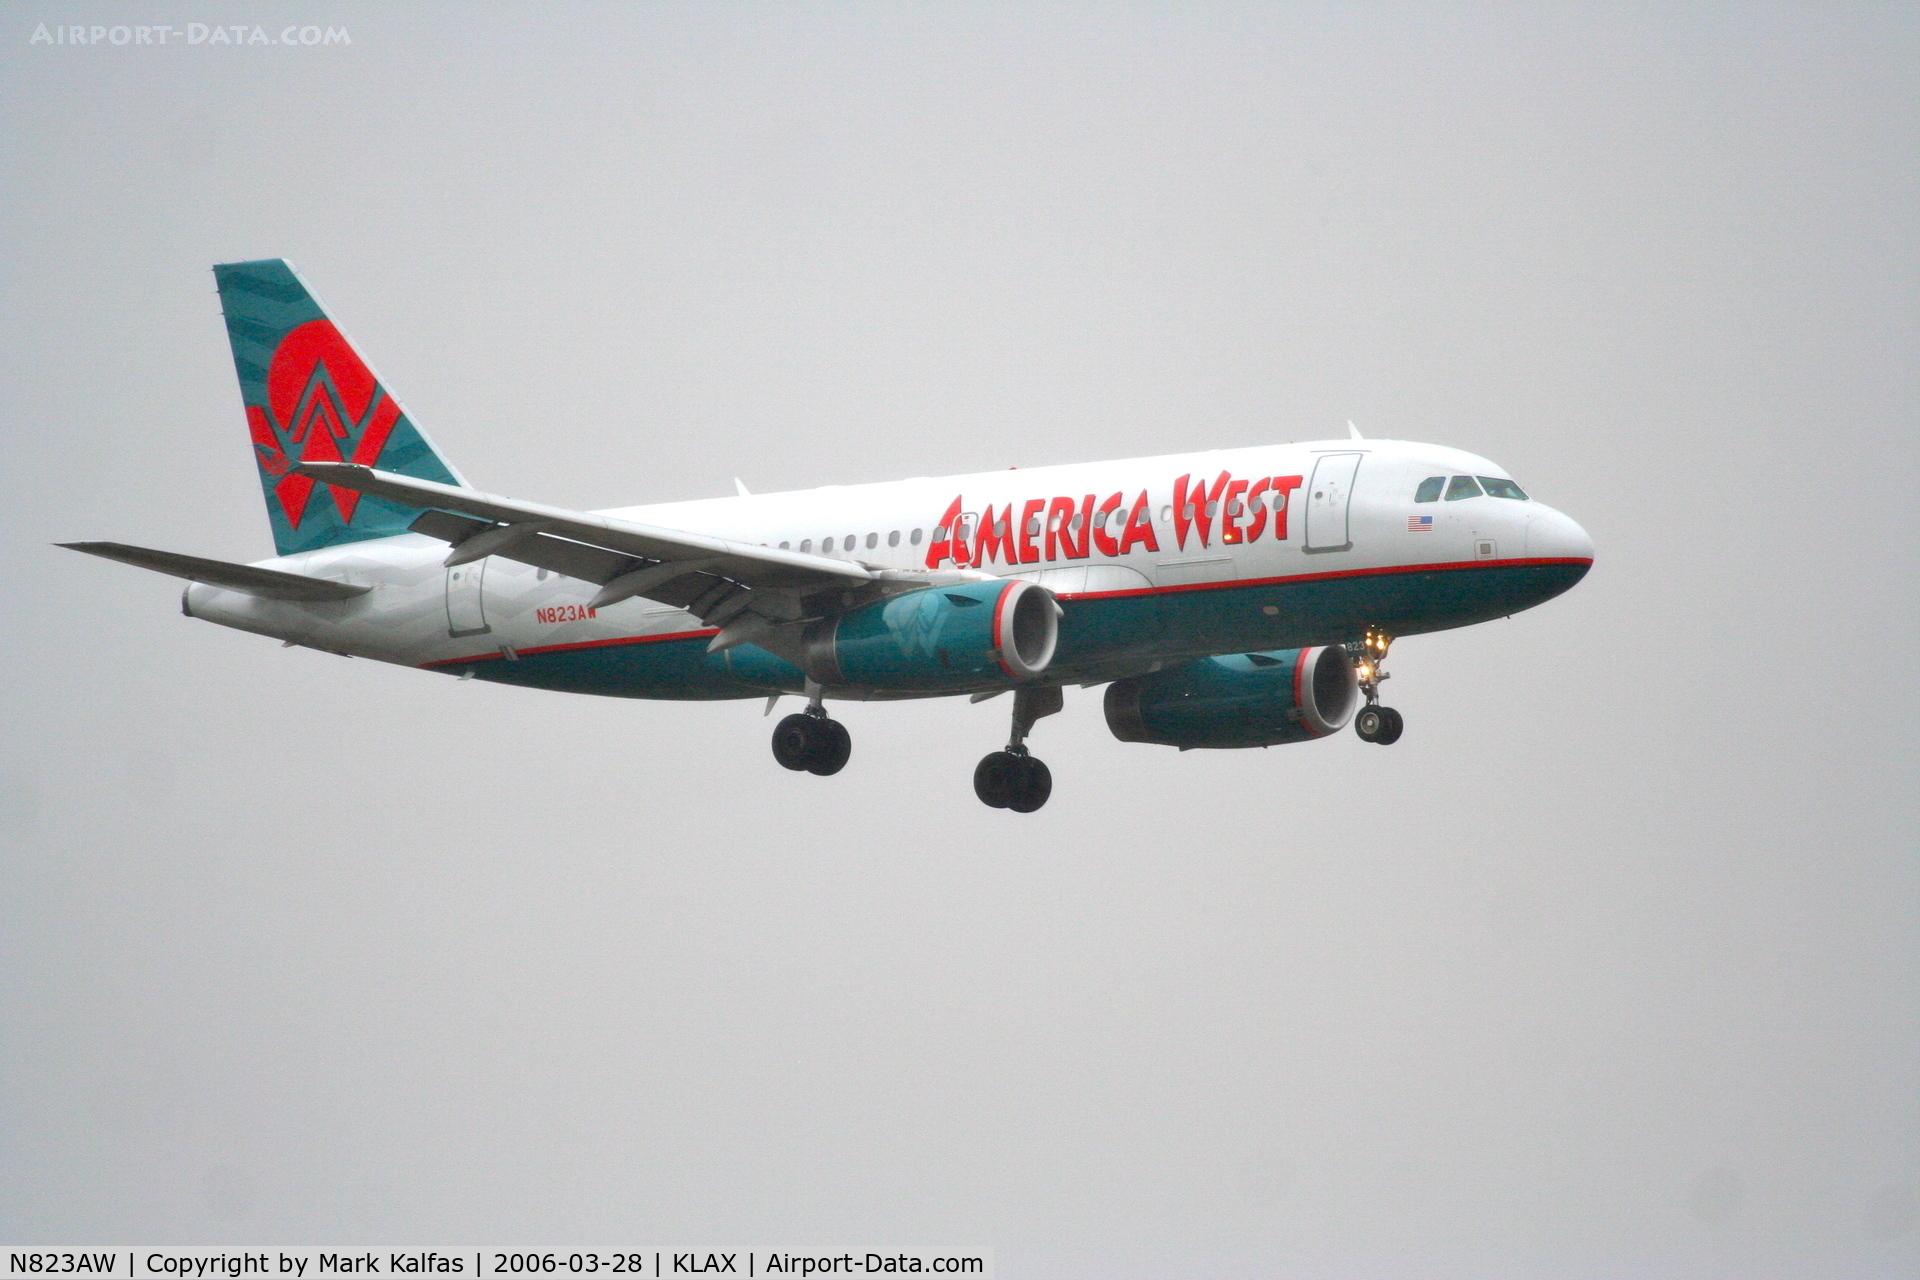 N823AW, 2001 Airbus A319-132 C/N 1463, America West A319-132, N823AW on approach RWY 7R KLAX